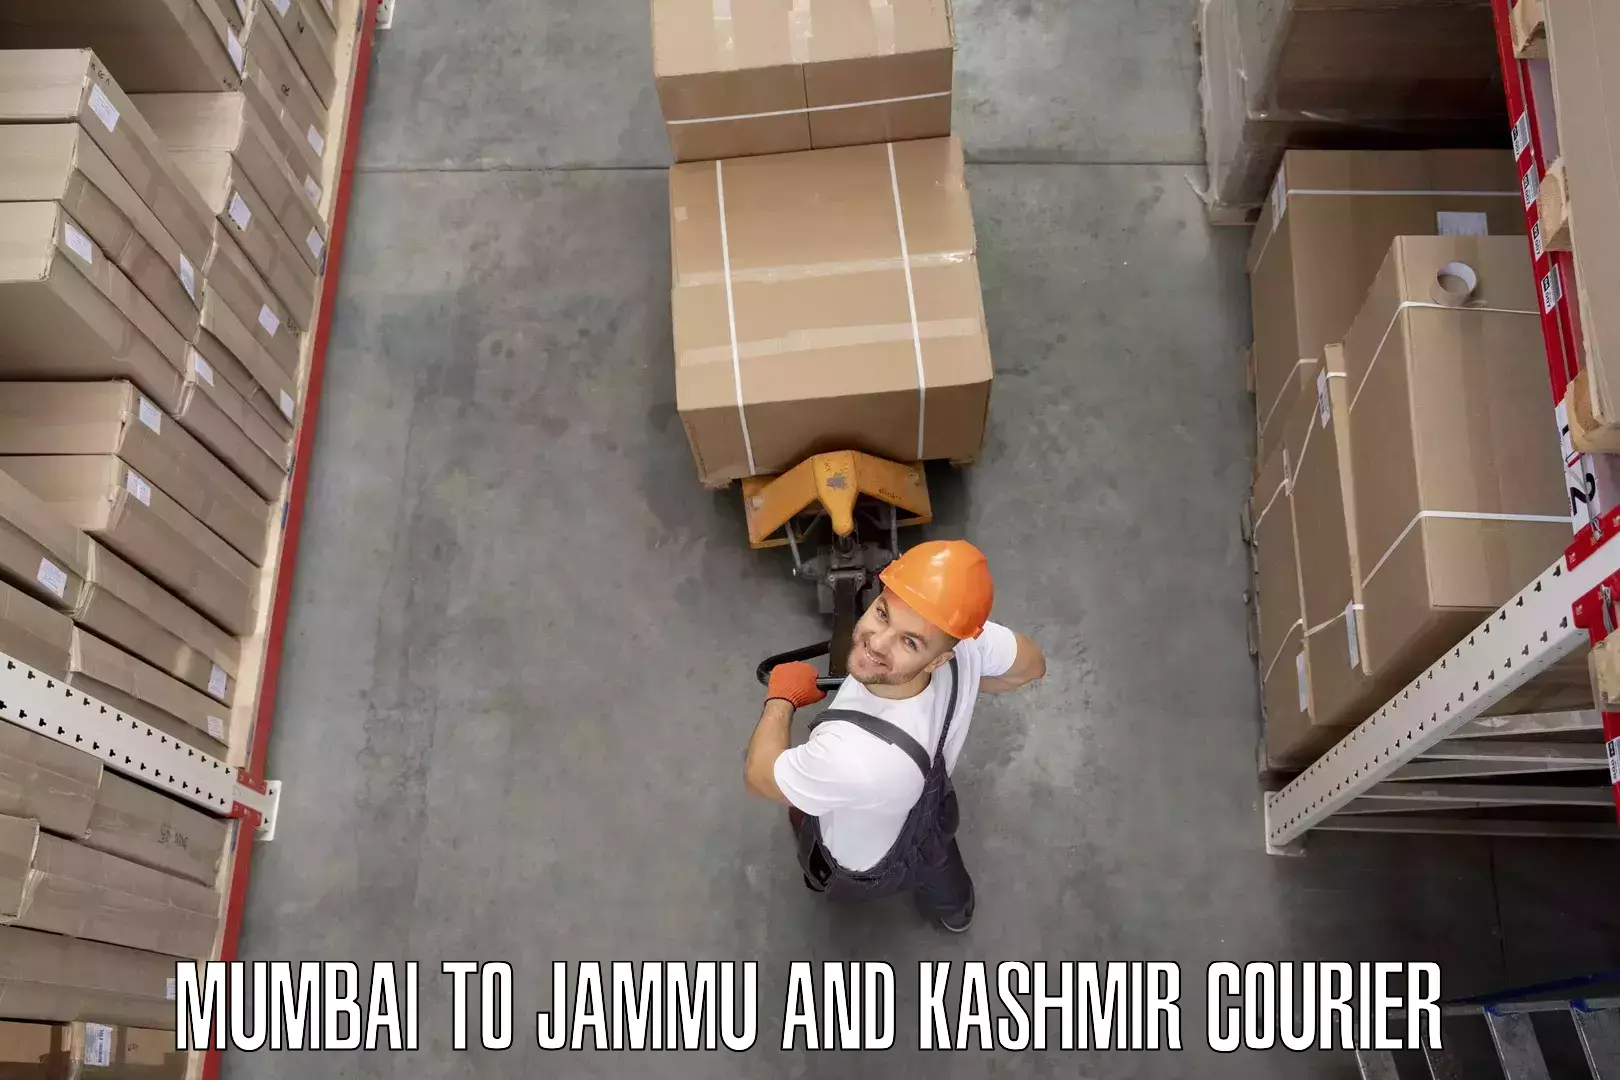 Furniture moving experts Mumbai to Jammu and Kashmir